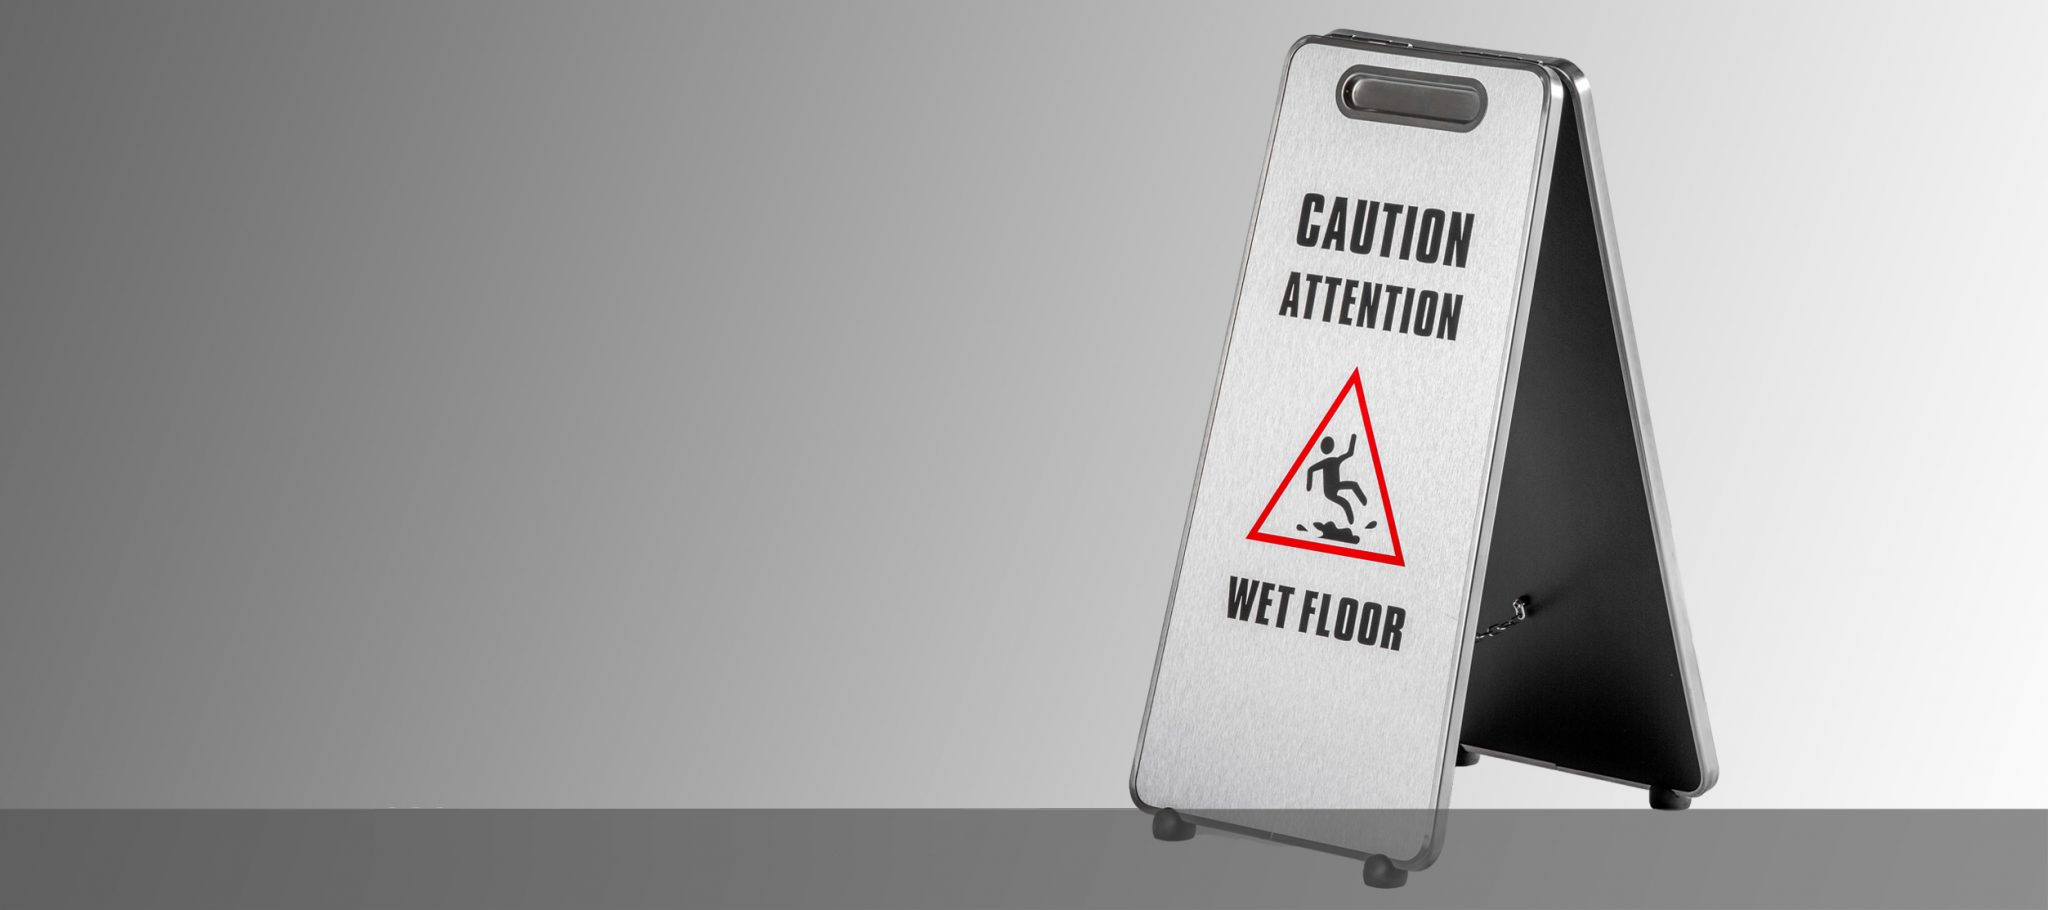 wet floor sign / caution floor sign / wet floor caution sign in Canada